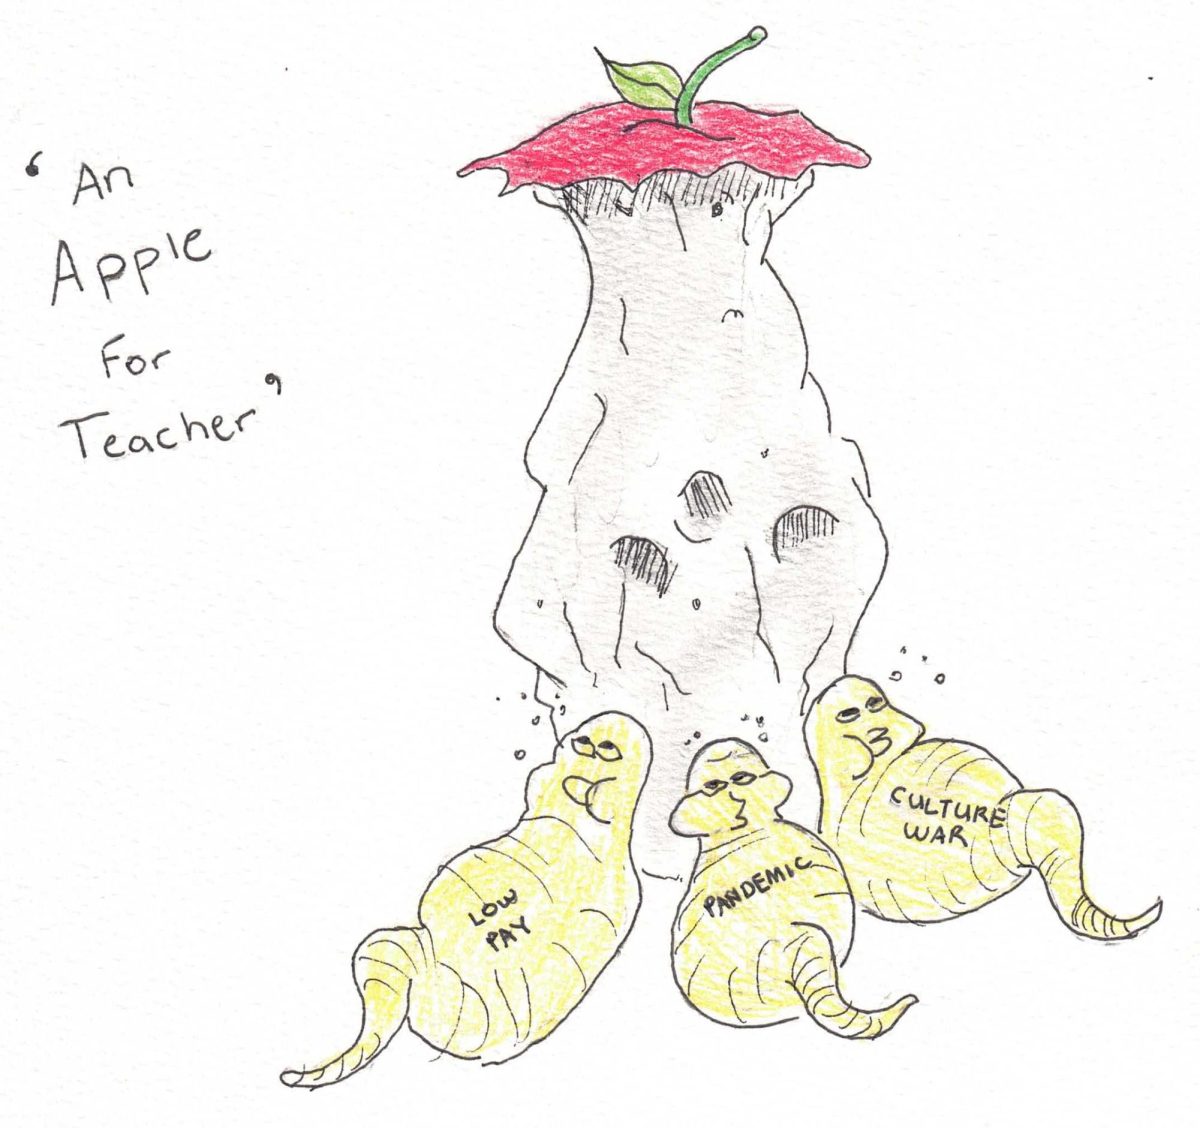 Political cartoon: An Apple for Teacher